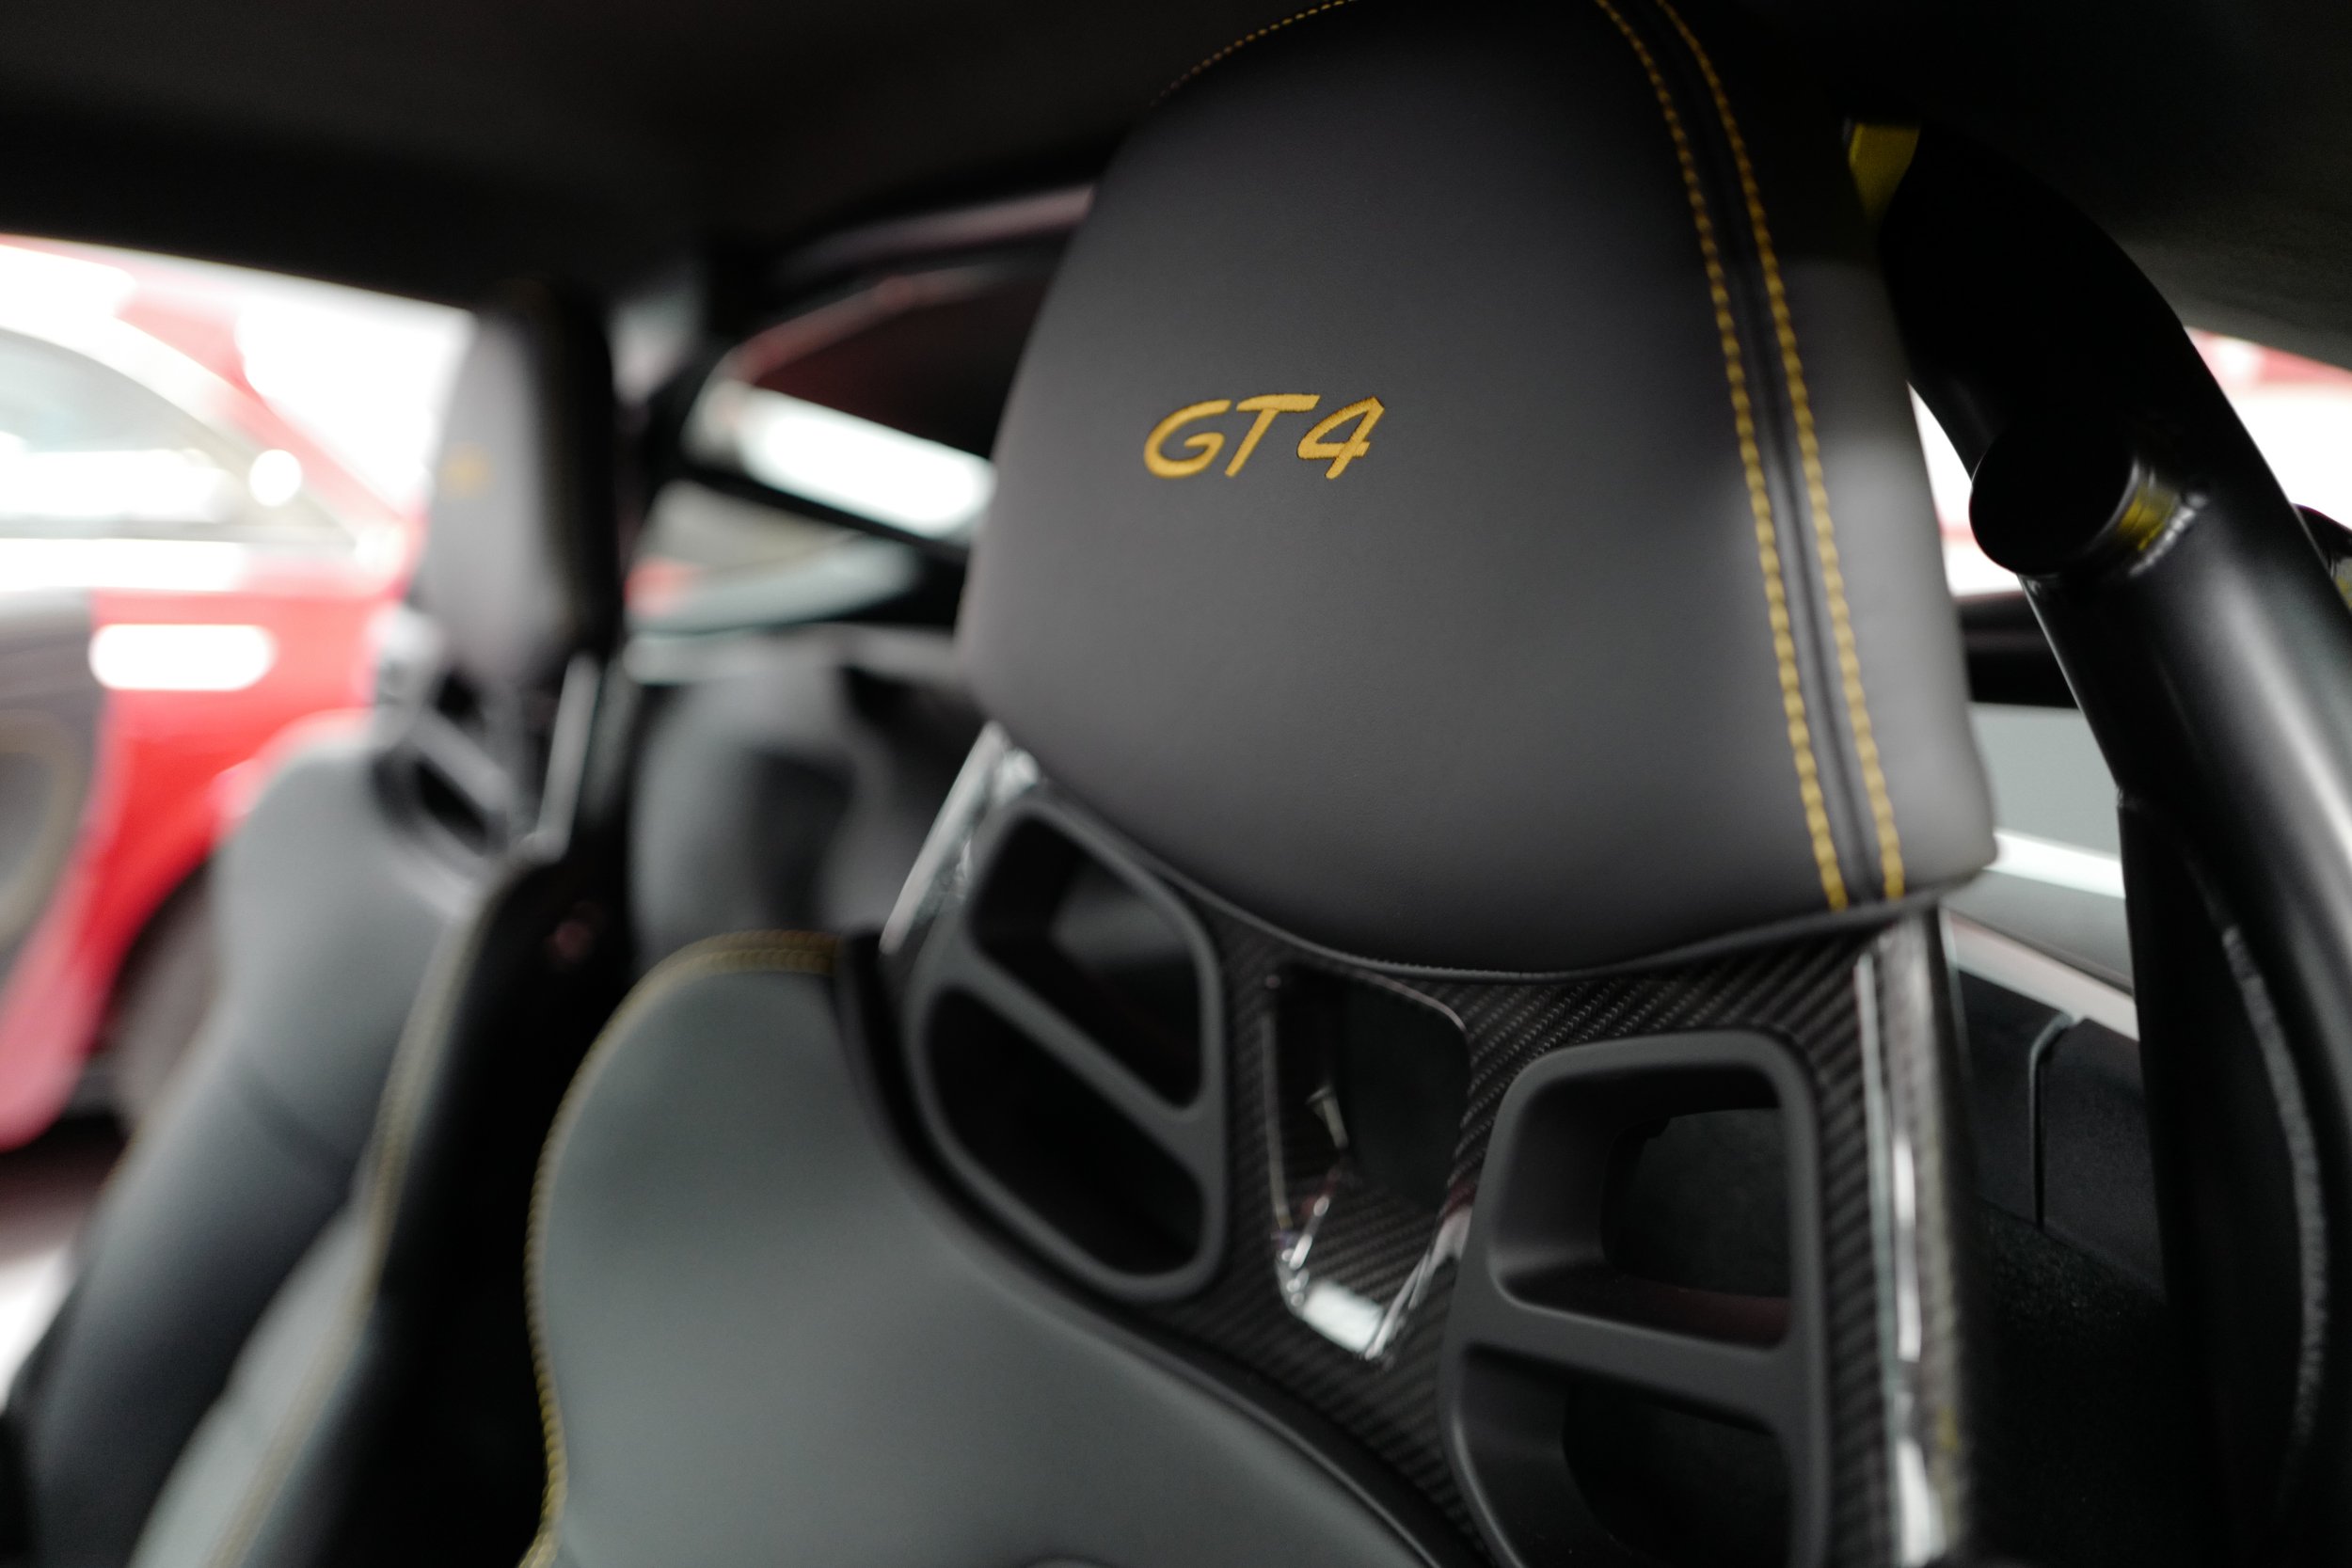 1.25 - GT4 Headrest.JPG